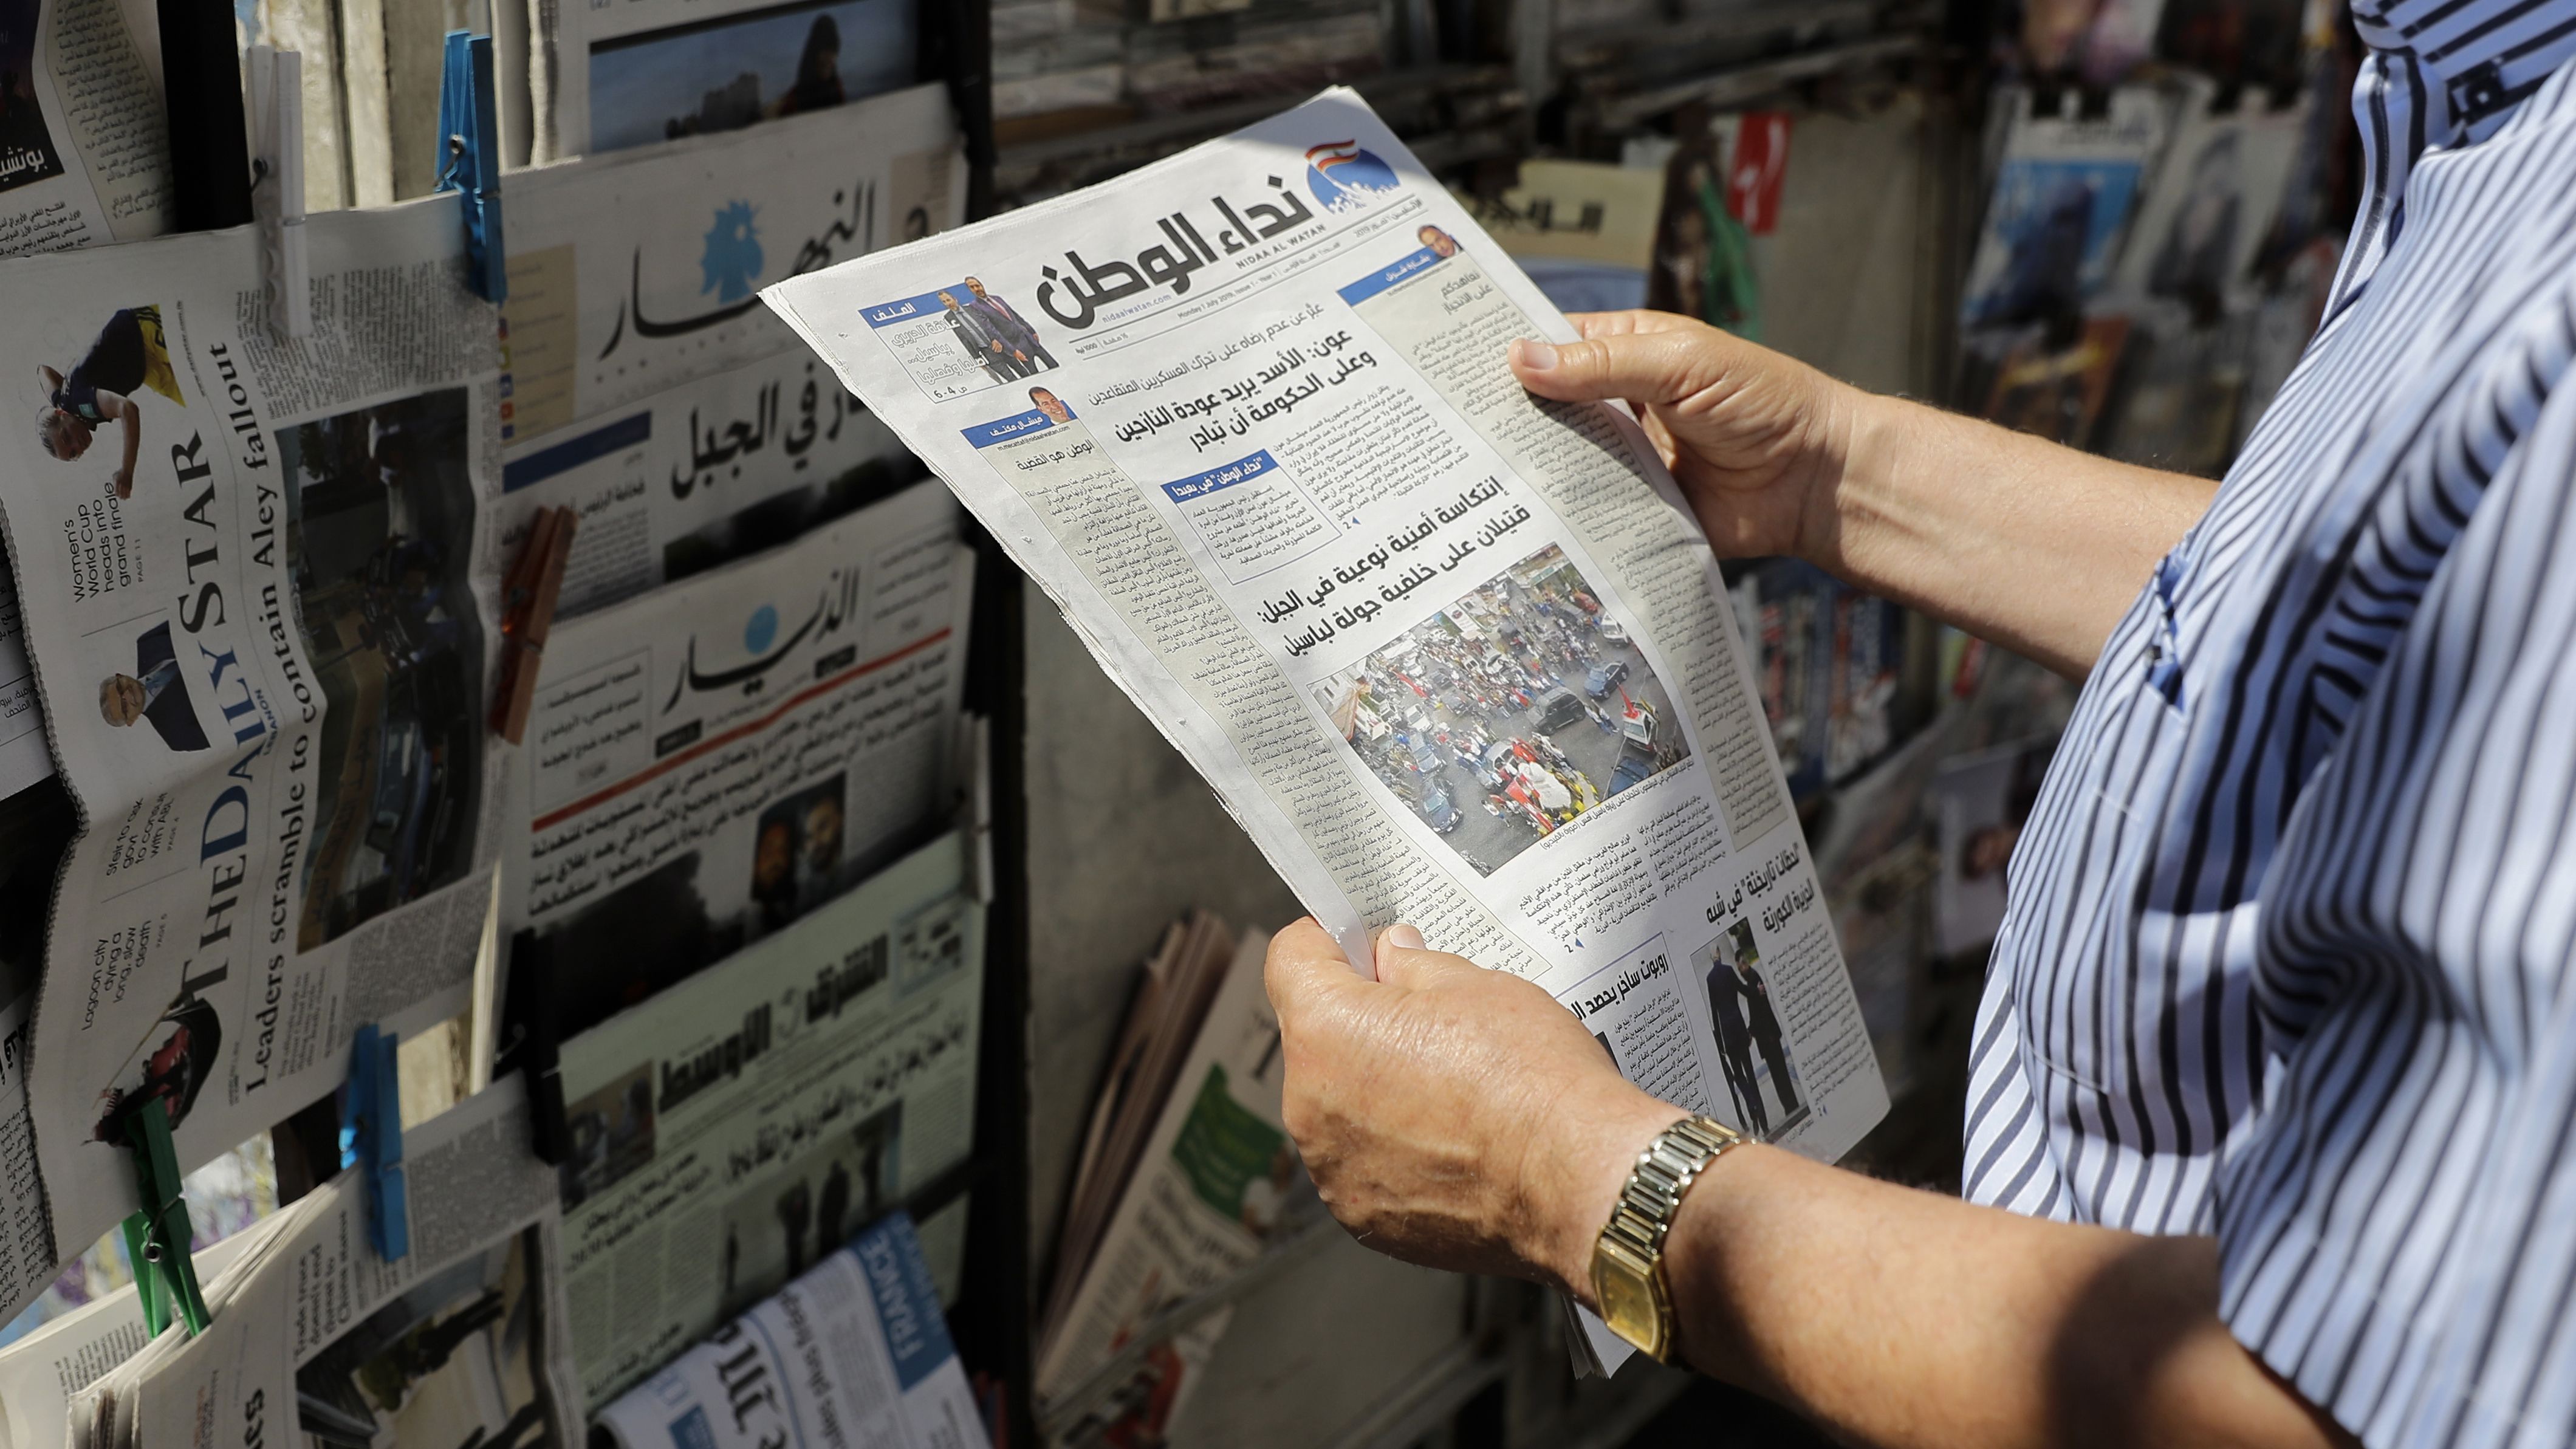 يعكس هذا التوقف عمق الازمة التي يعيشها القطاع الاعلامي في لبنان